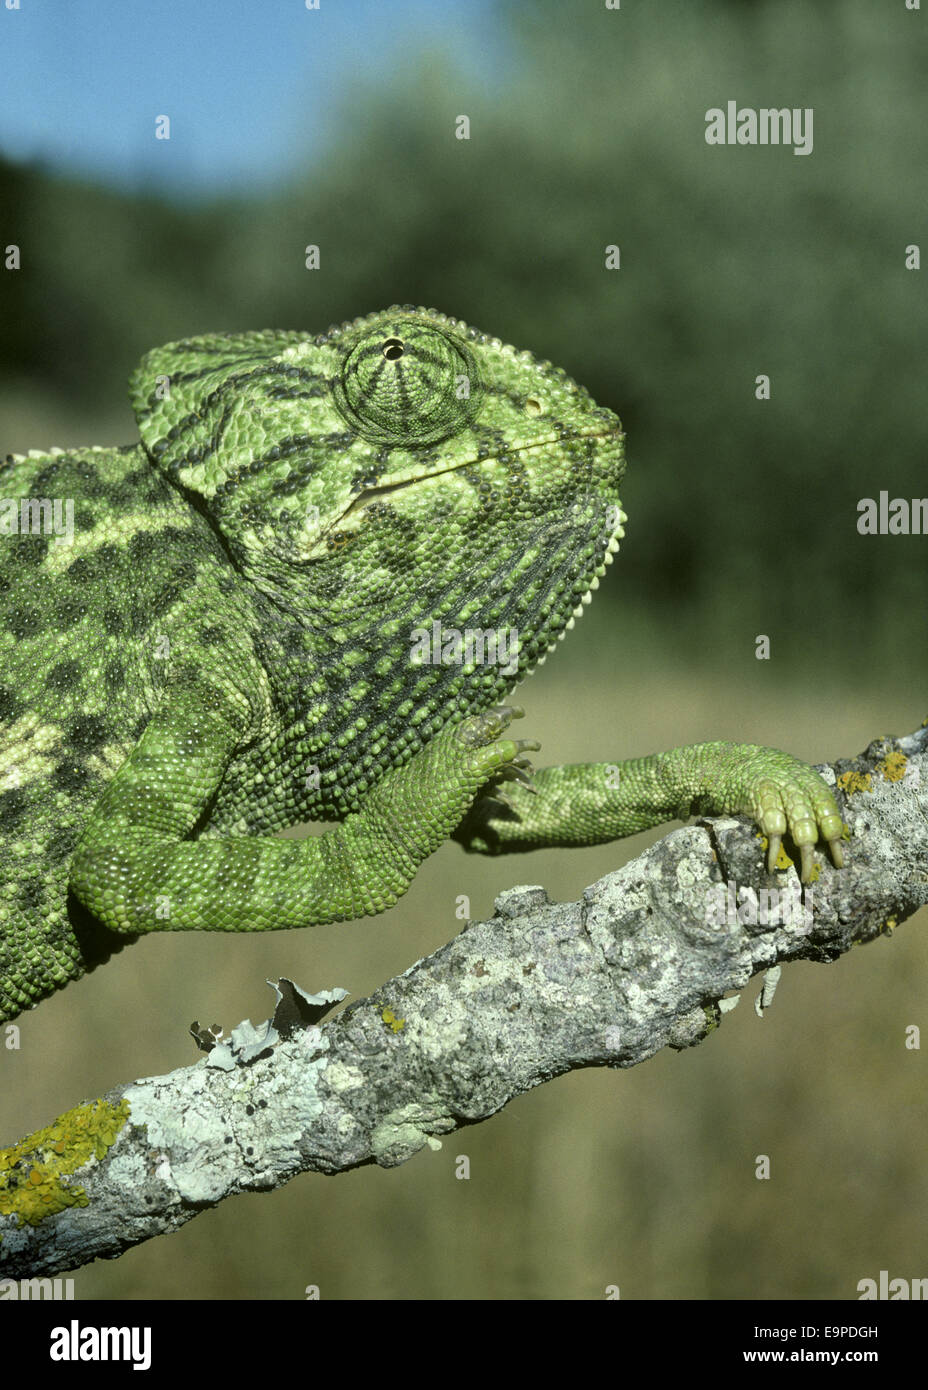 European Chameleon - Chamelo chameleon Stock Photo